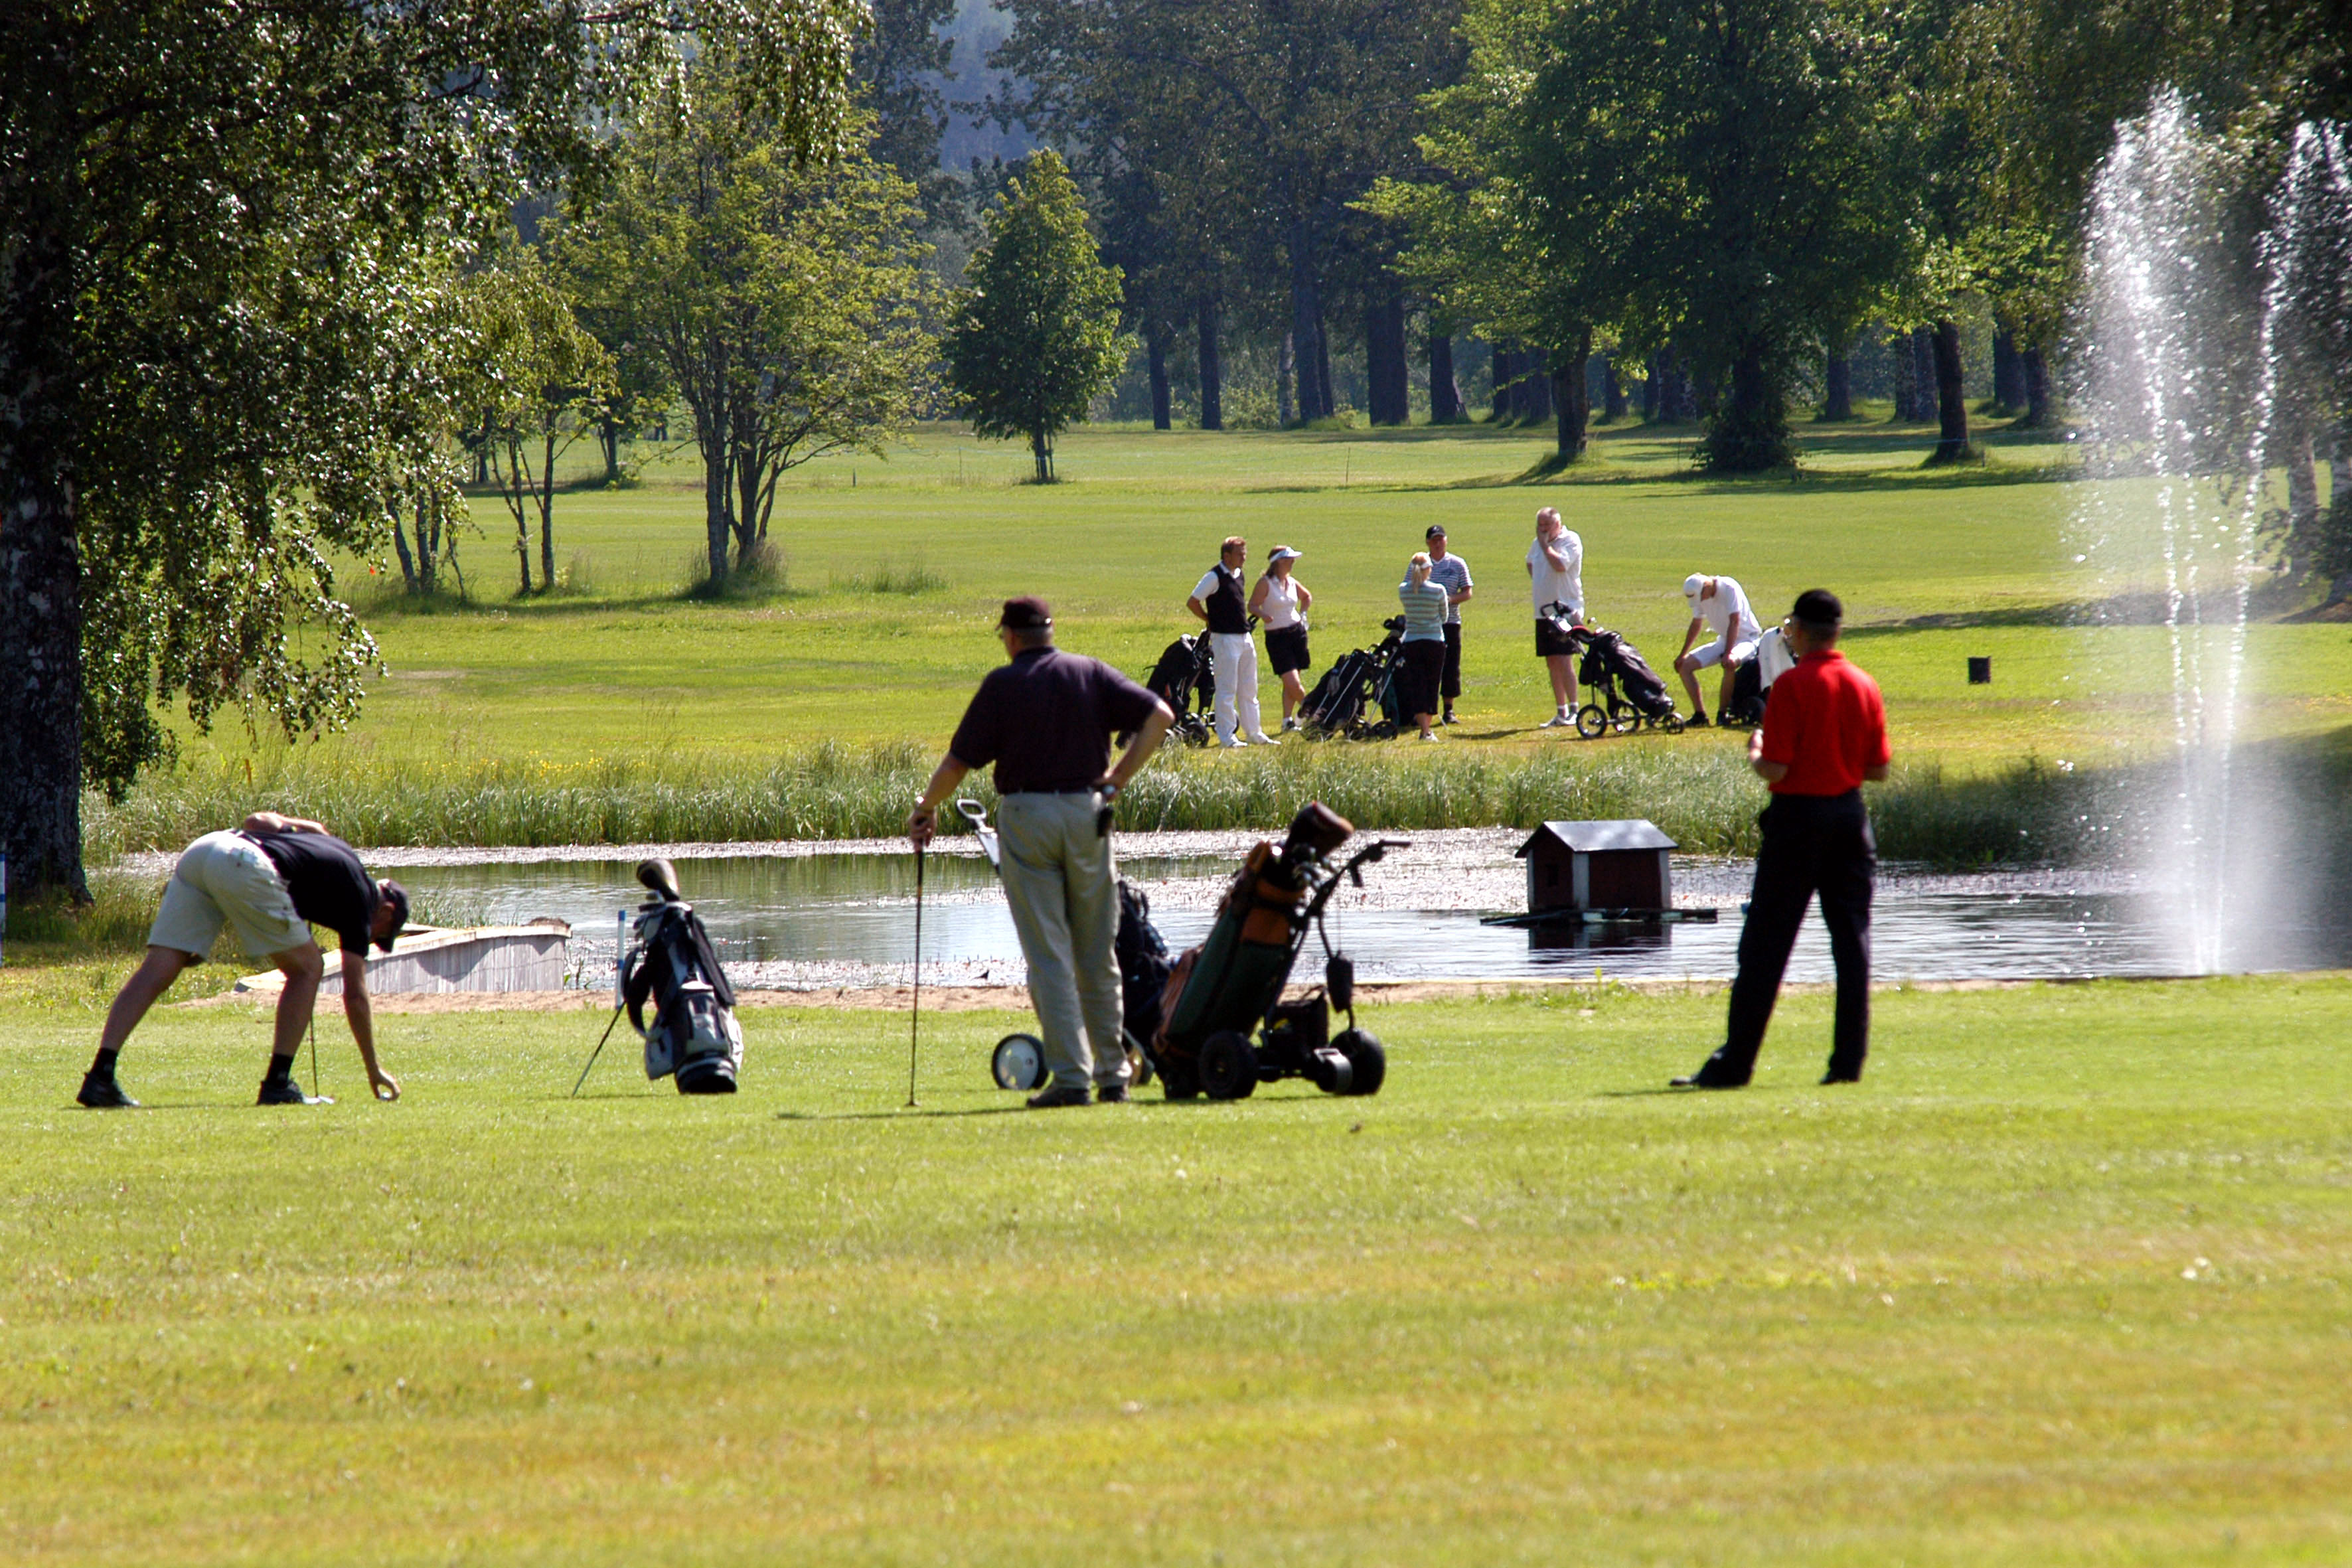 Flera spelare står på den gröna golfbanan. En person böjer sig ned för att ta upp en golfboll från marken.